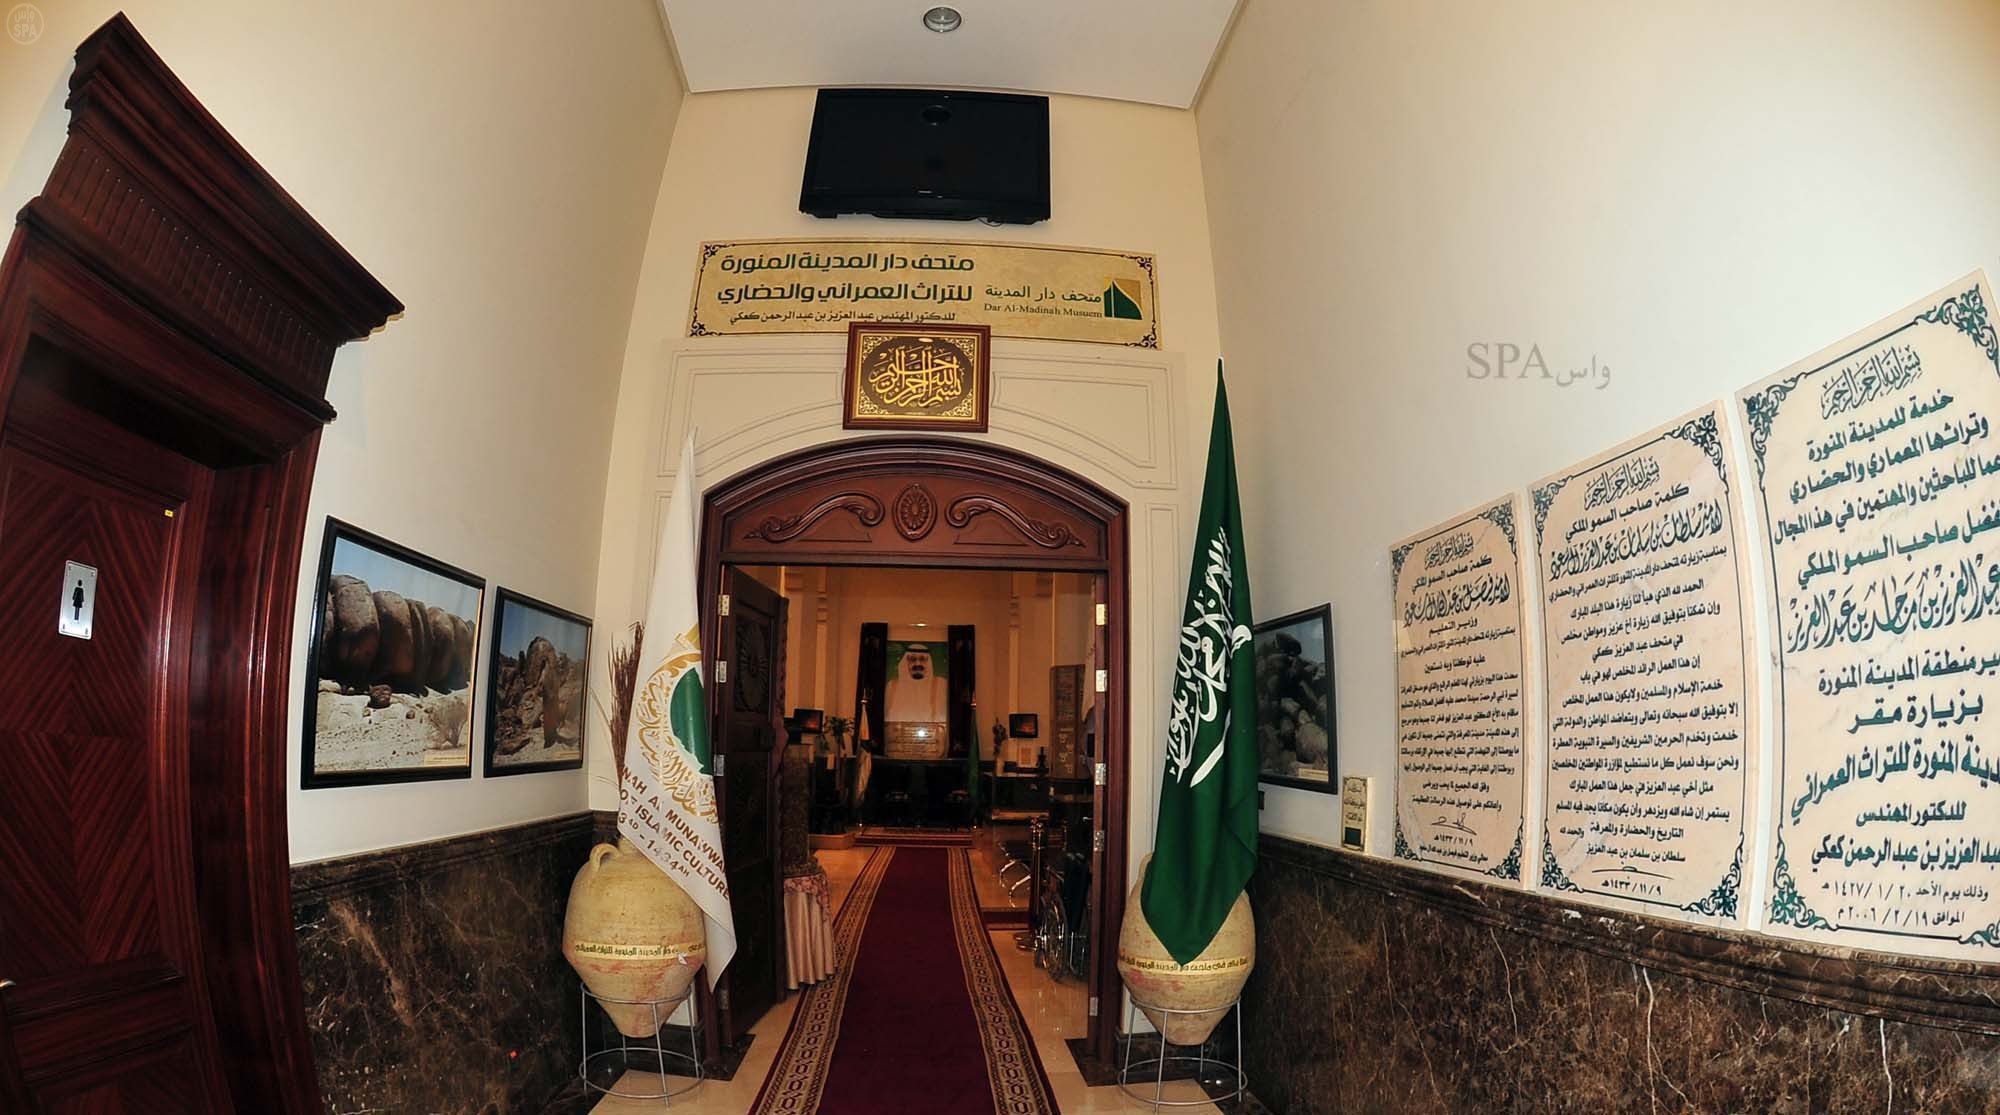 "تقرير" متحف دار المدينة للتراث العمراني والحضاري أول متحف متخصص للمدينة المنورة